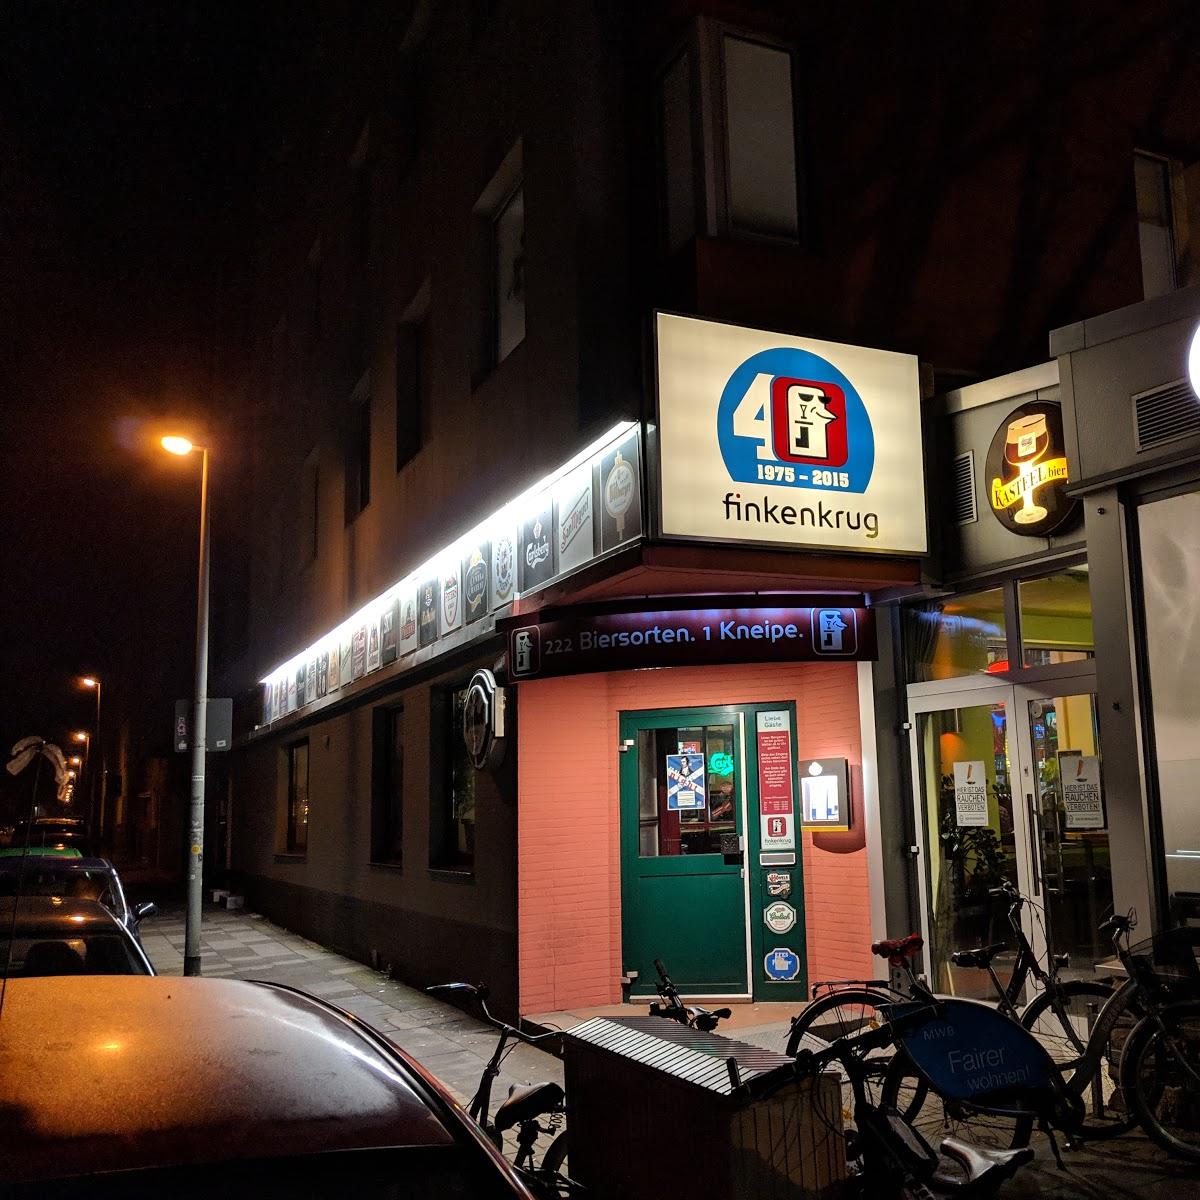 Restaurant "finkenkrug" in  Duisburg